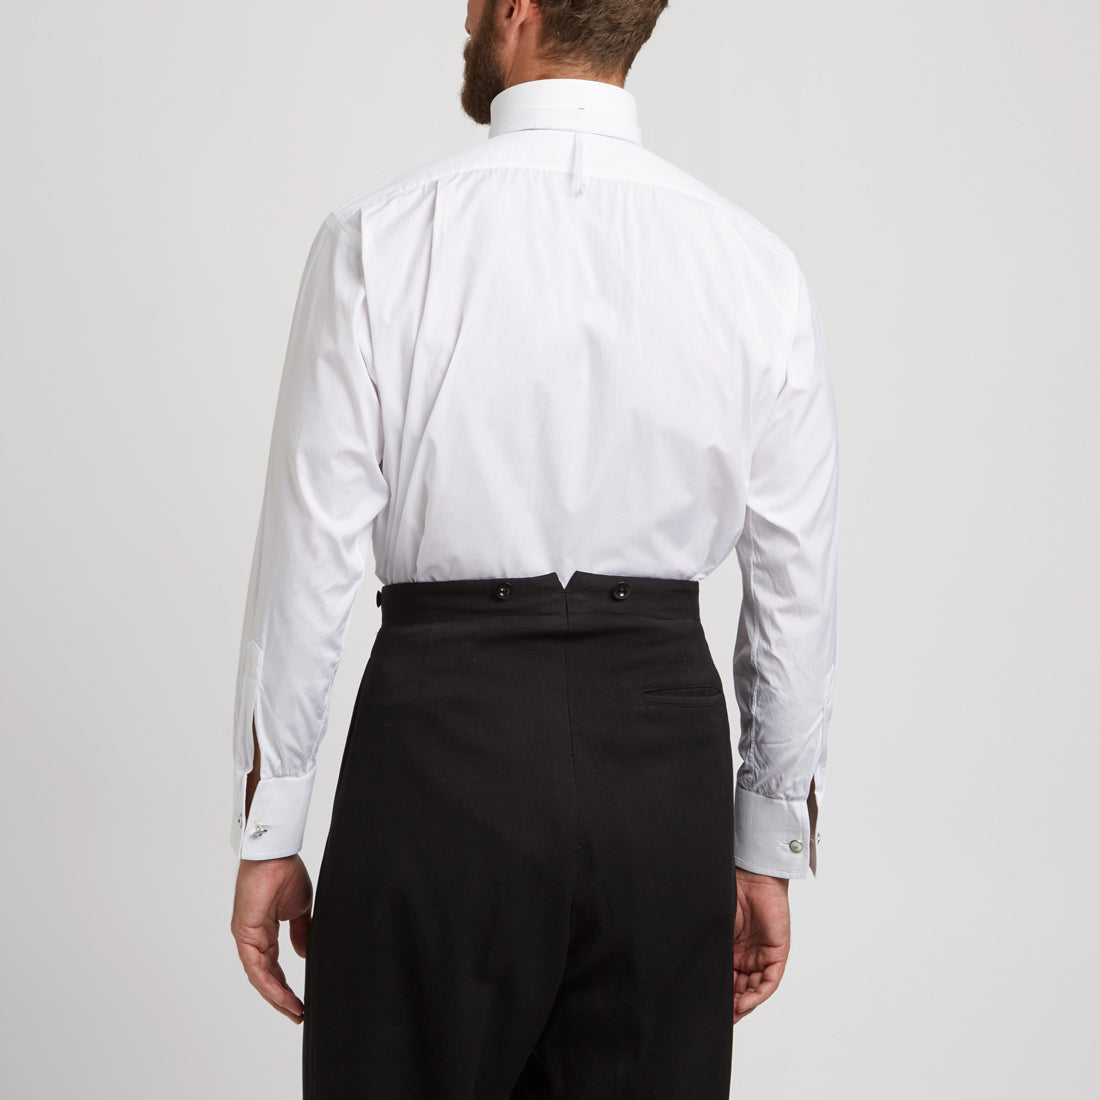 White Stiff Bib Neckband Linen Dress Shirt – Budd London